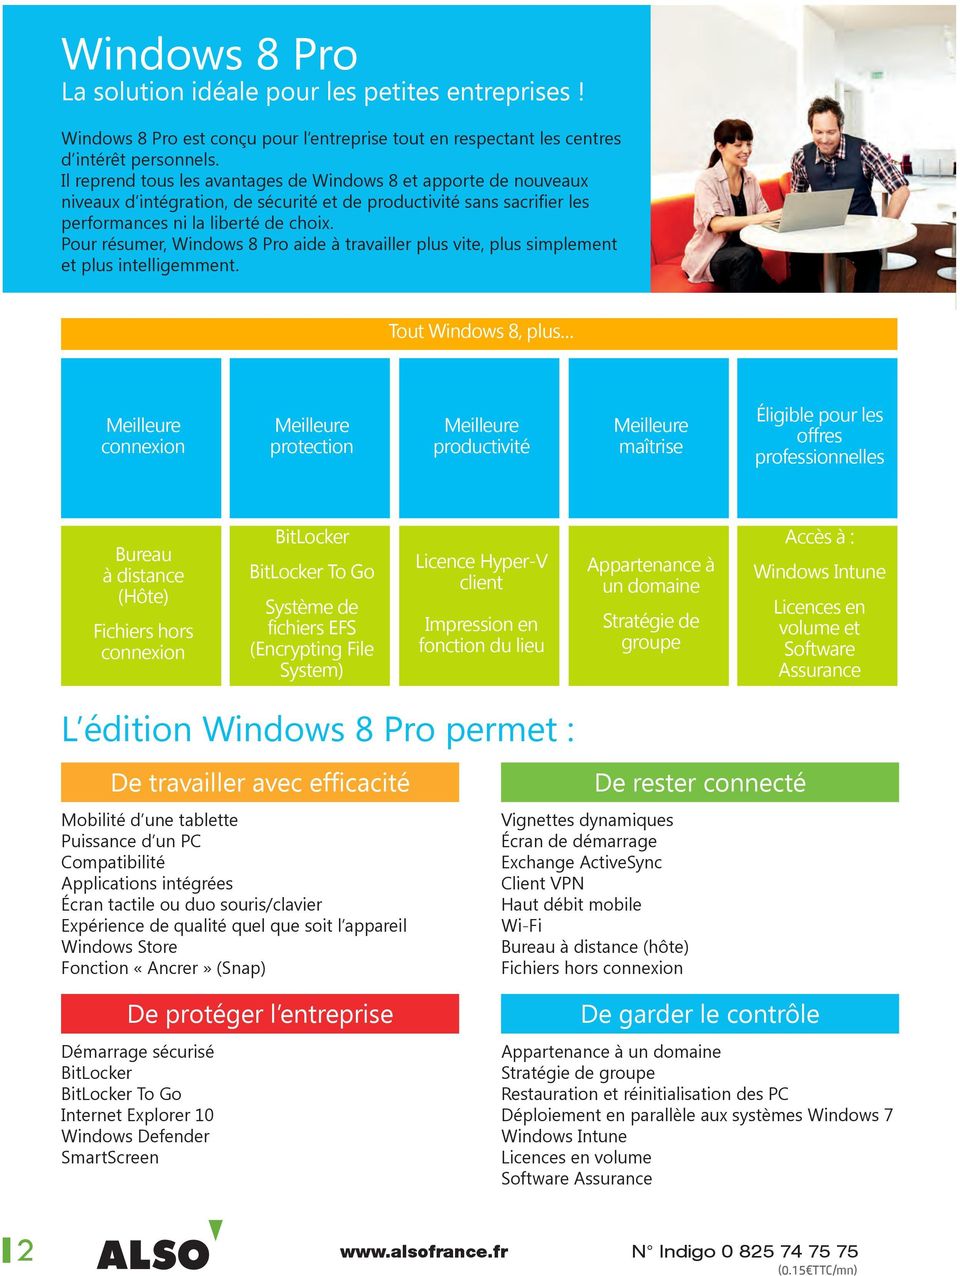 Pour résumer, Windows 8 Pro aide à travailler plus vite, plus simplement et plus intelligemment.